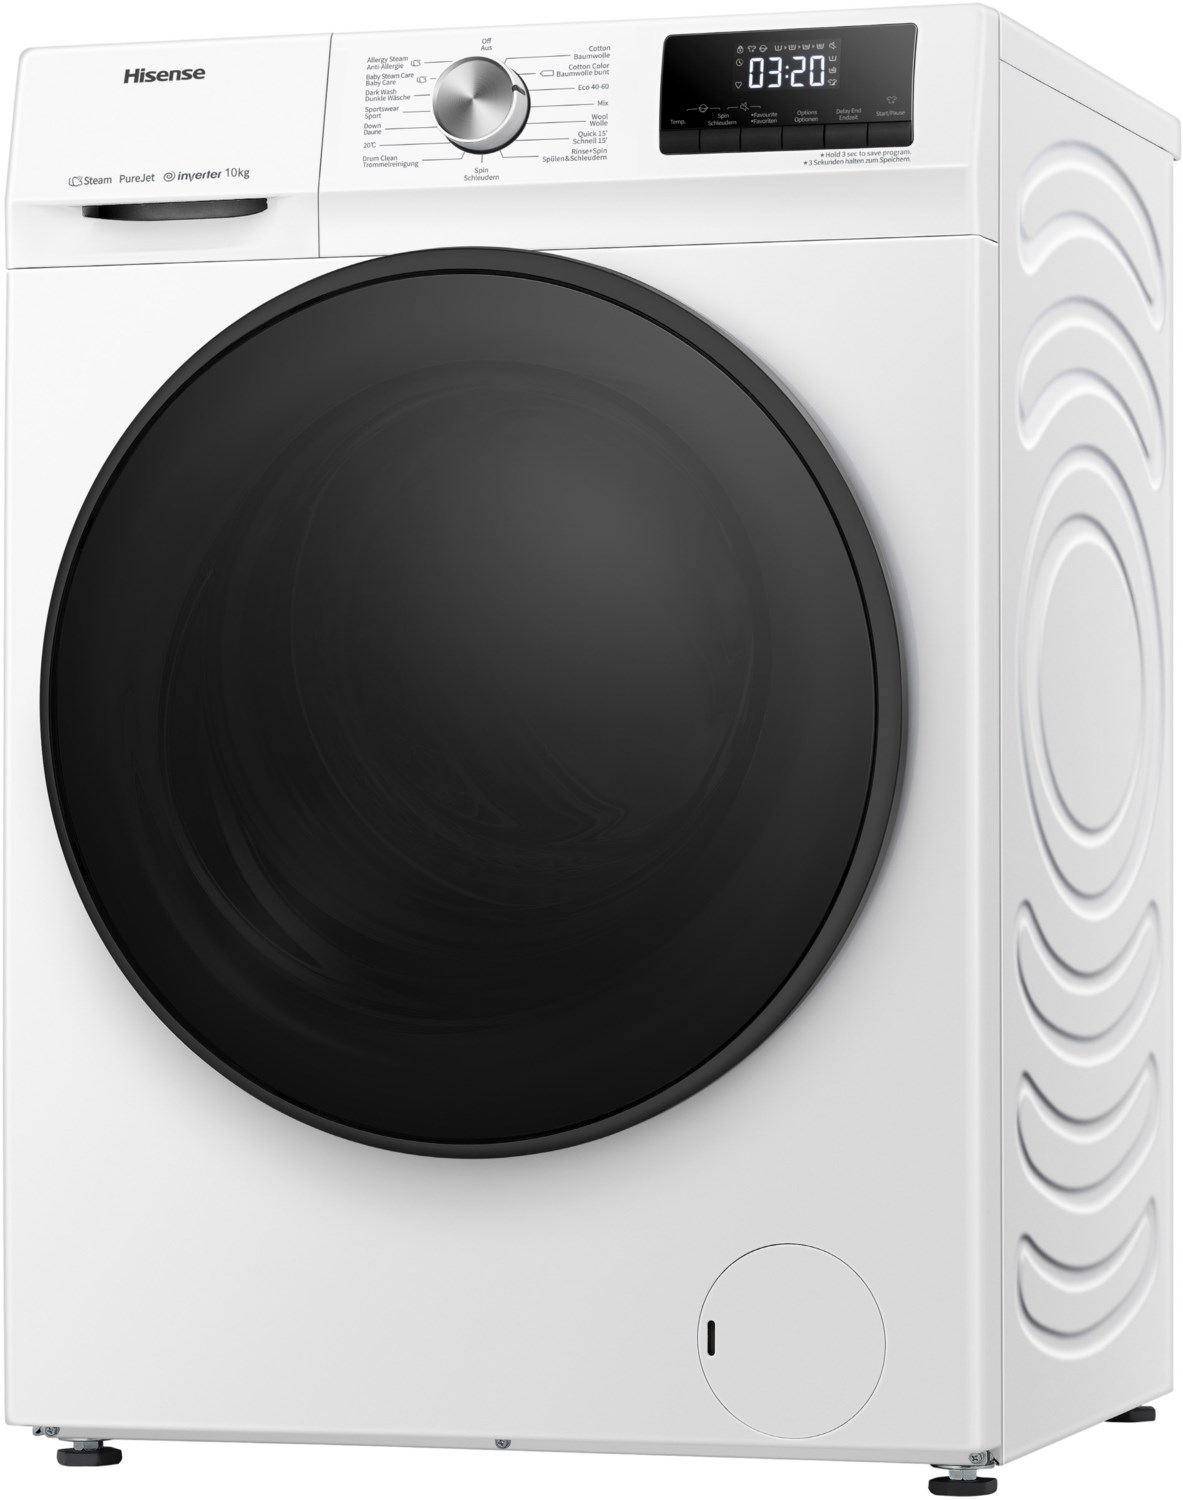 WFQA1014EVJM Stand-Waschmaschine-Frontlader weiß / A